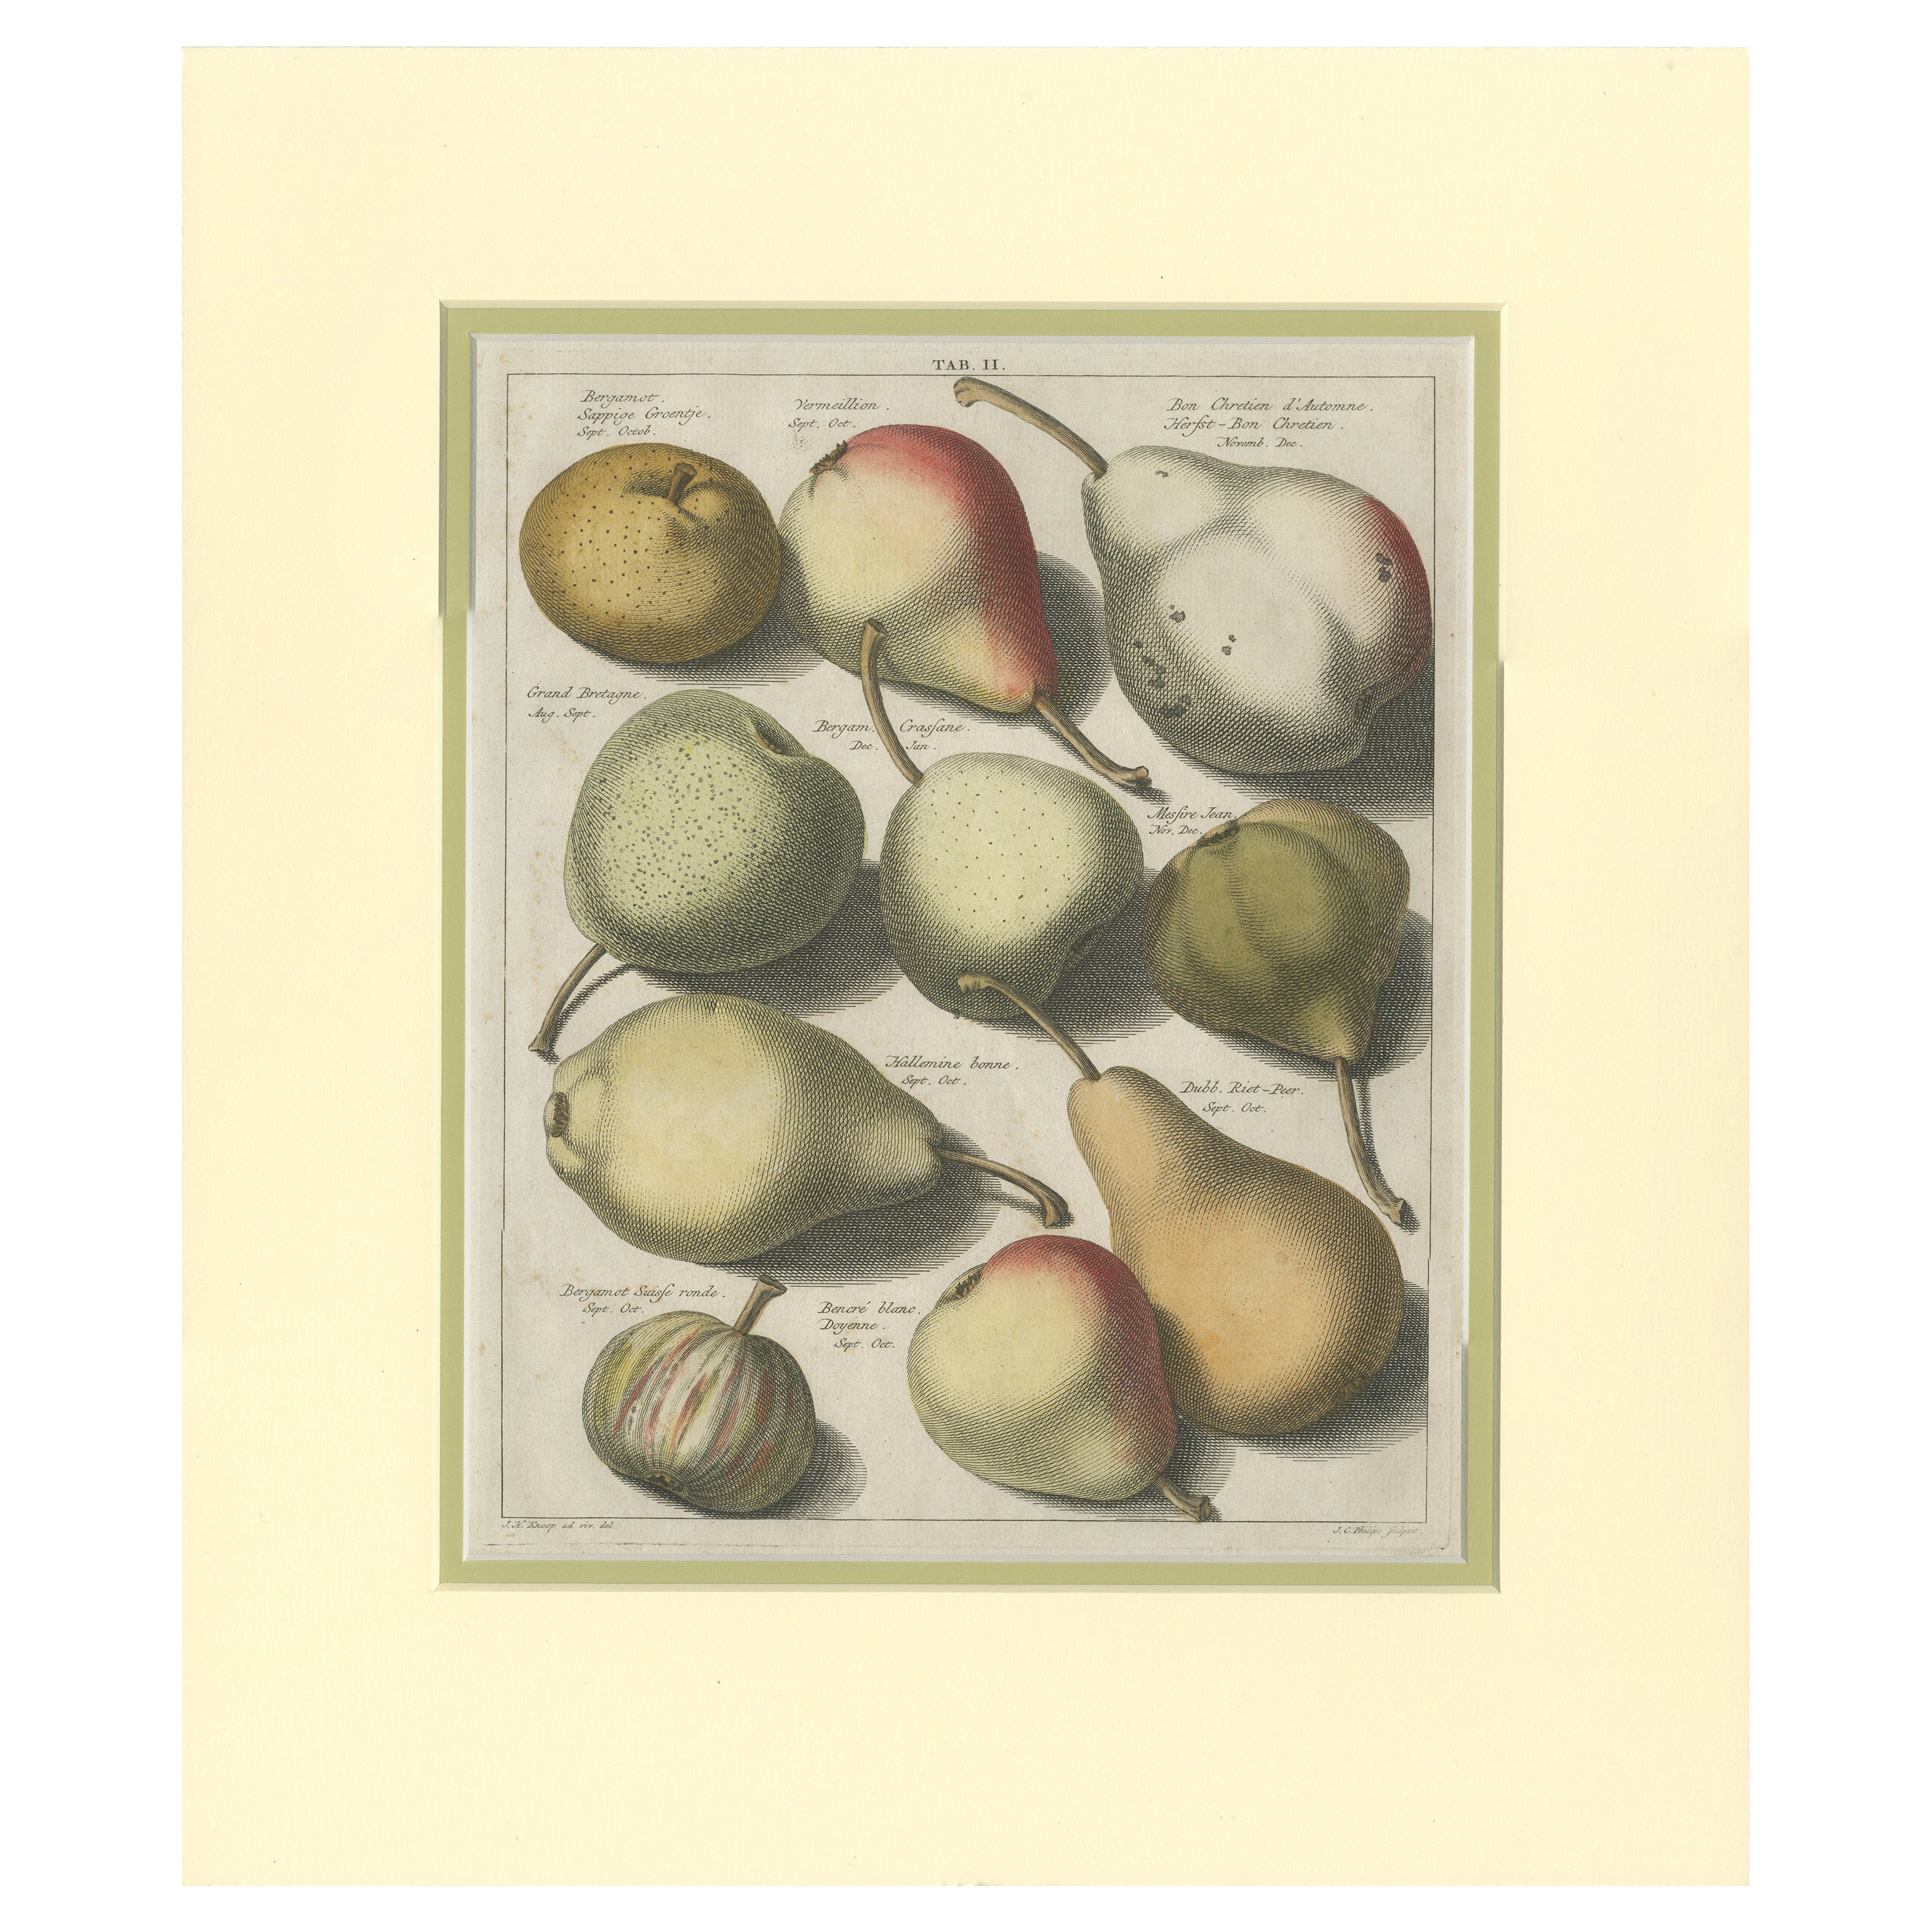 Tab II Antique Print of Various Pears by Knoop '1758'